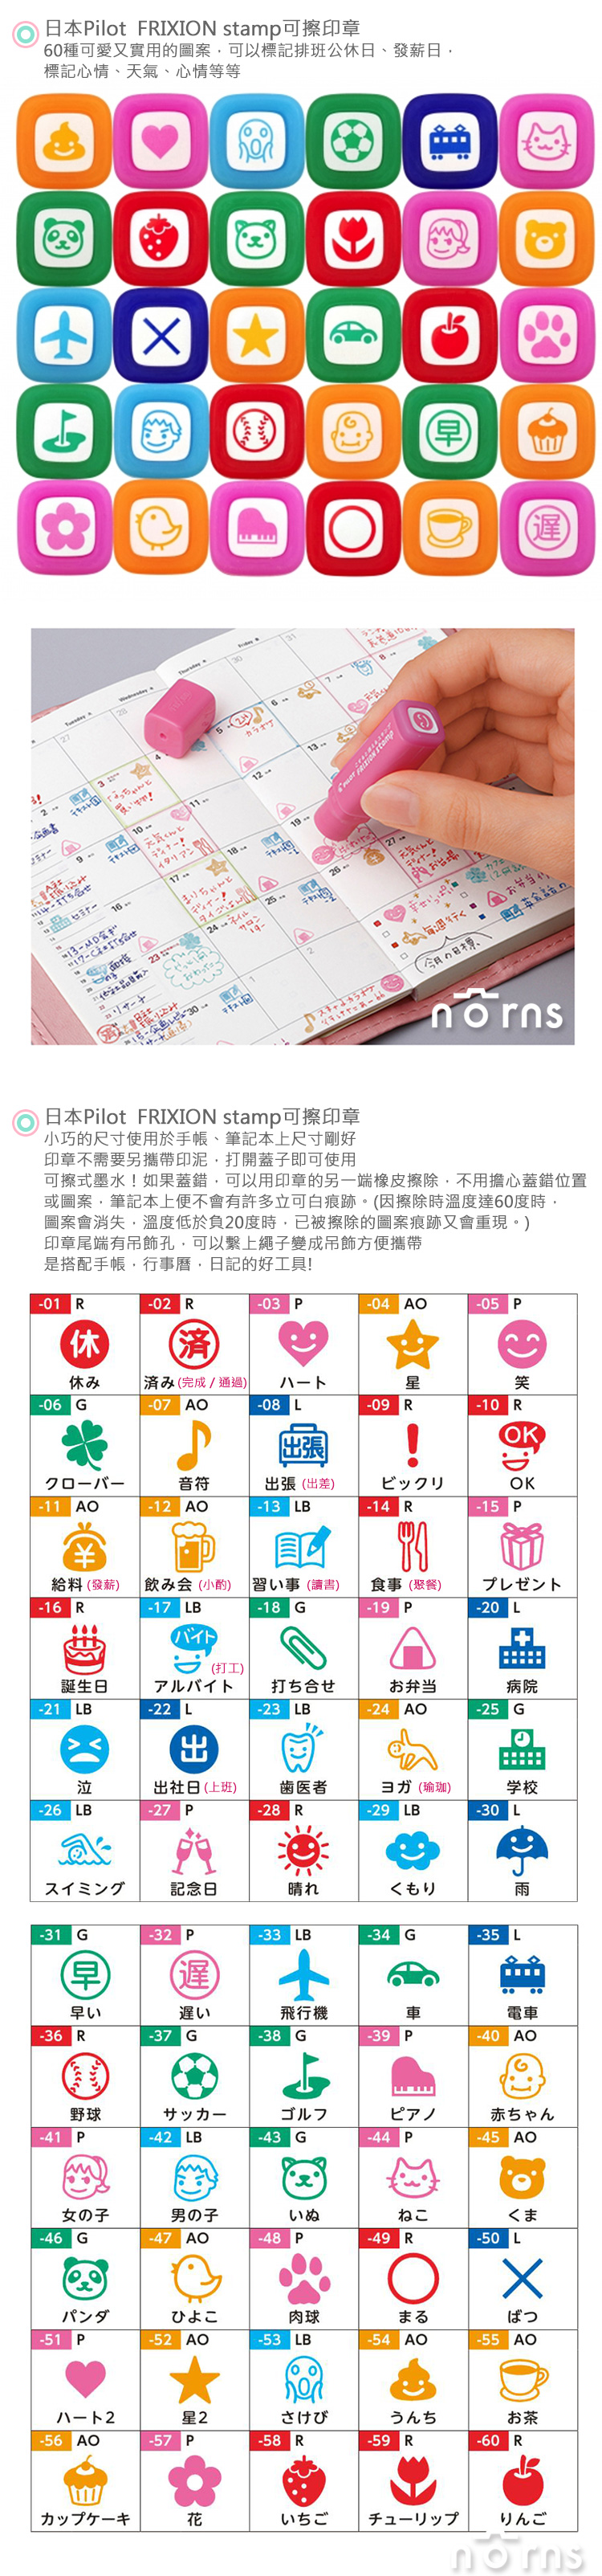 【日本Pilot FRIXION stamp可擦式印章】Norns 大人氣魔擦擦印 百樂 手帳本日記用 60種 可愛日本文具